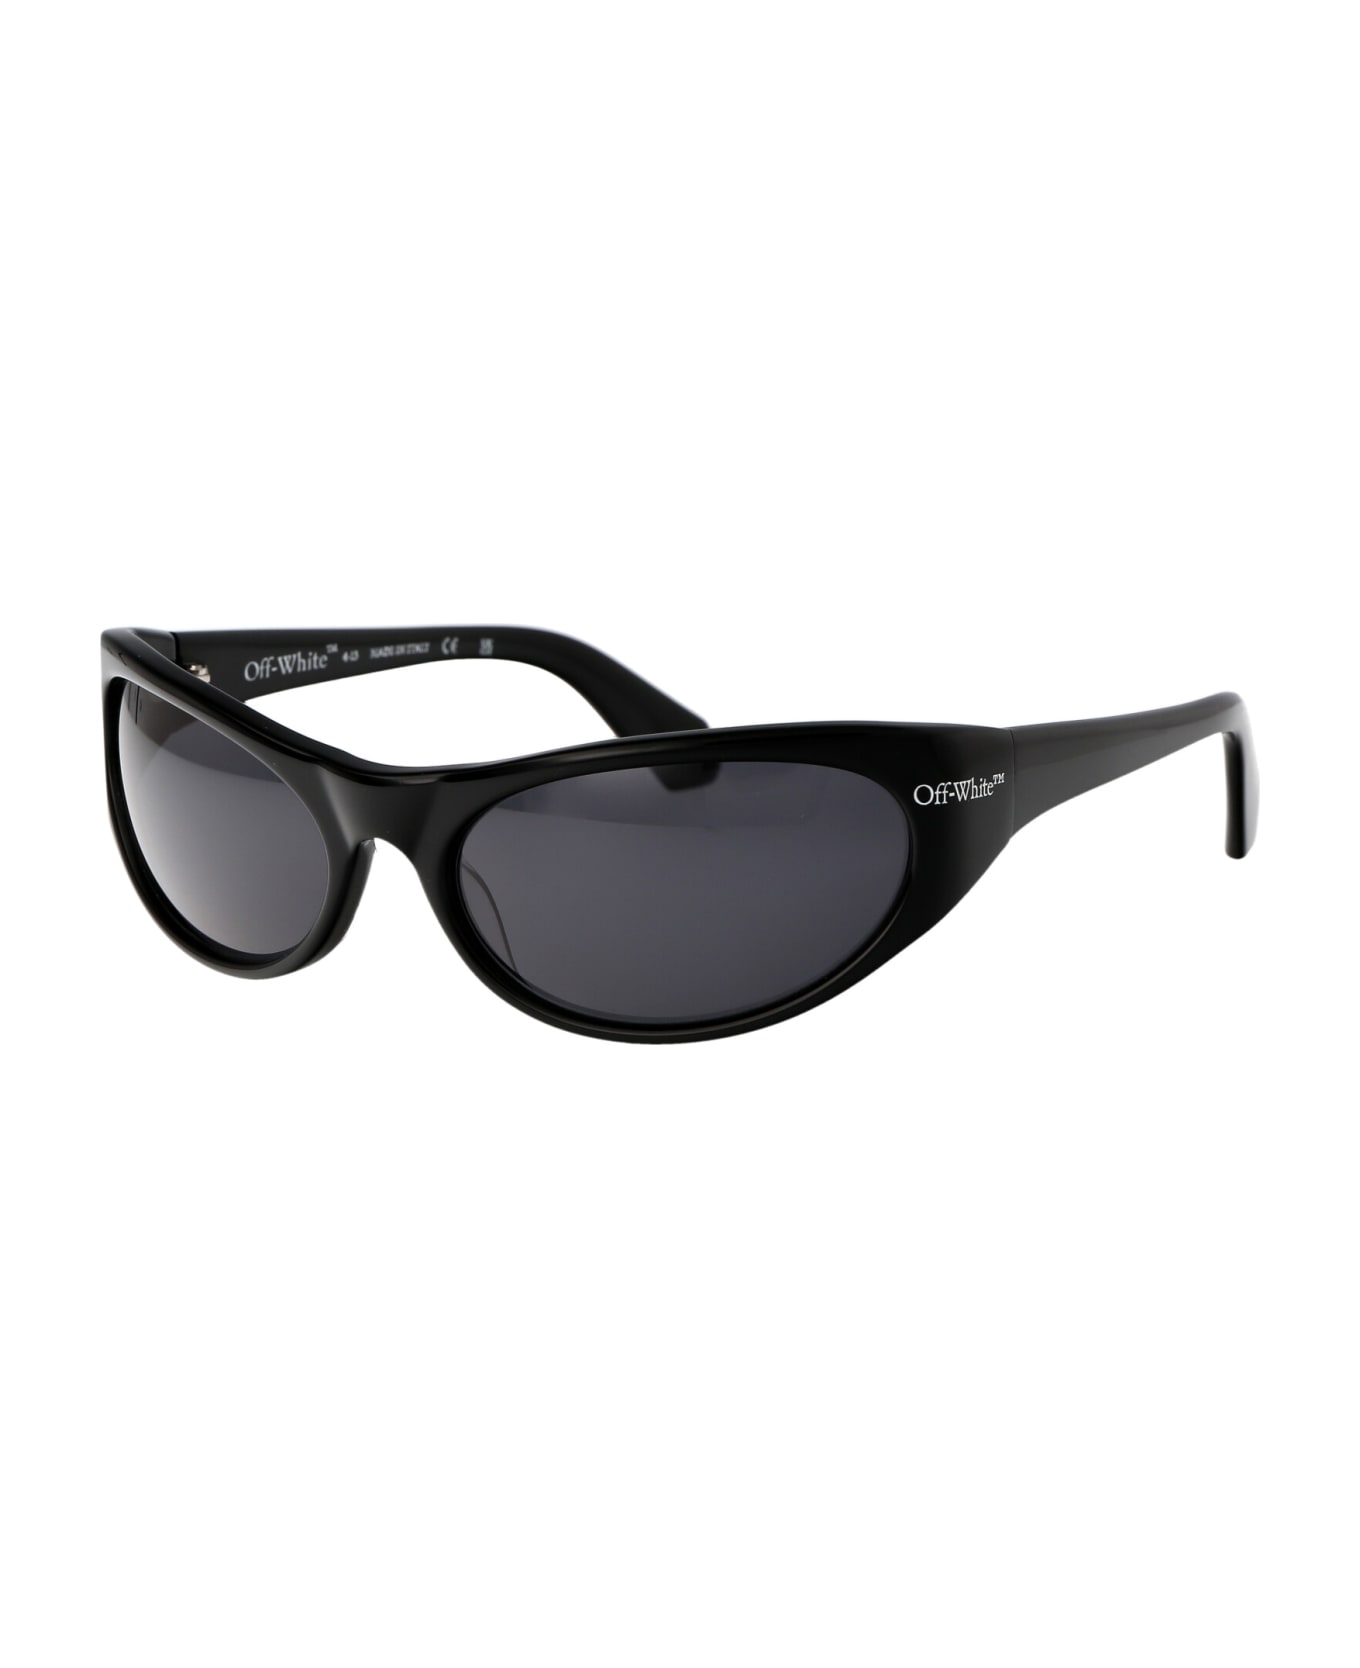 Off-White Napoli Sunglasses - 1007 BLACK